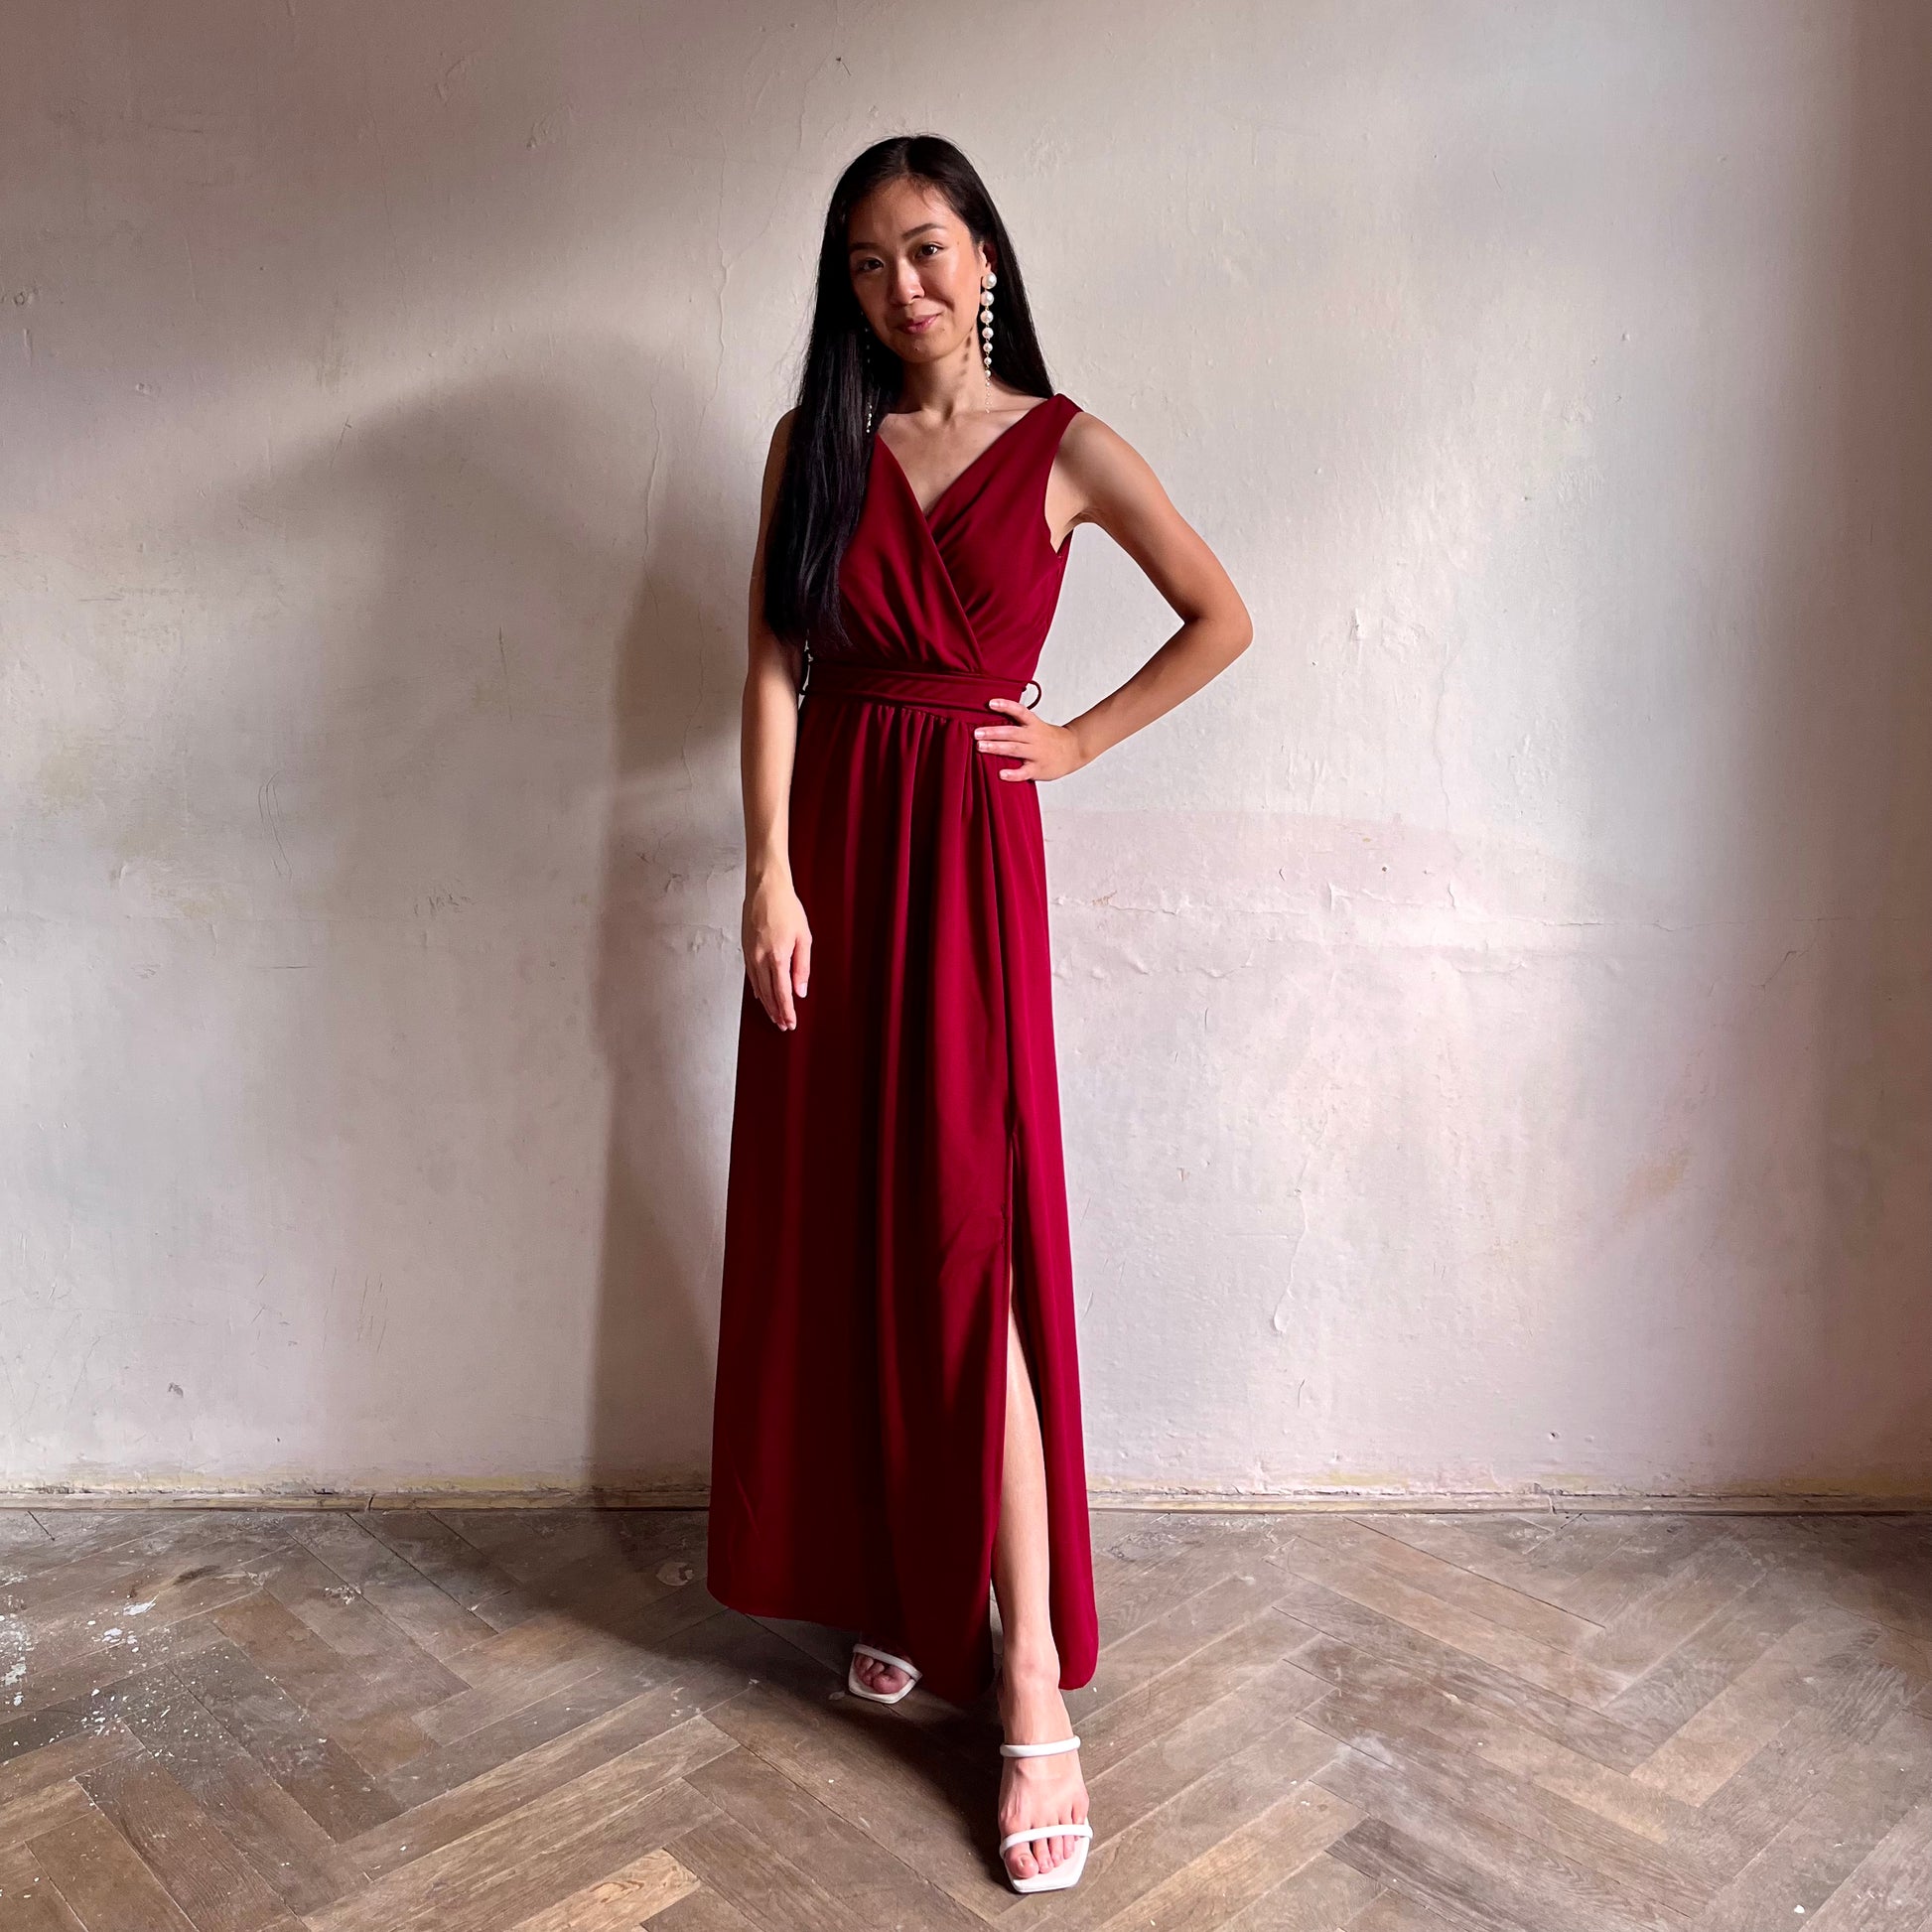 Modelka asijského původu pózující zepředu oblečená ve vínových společenských šatech s rozparkem